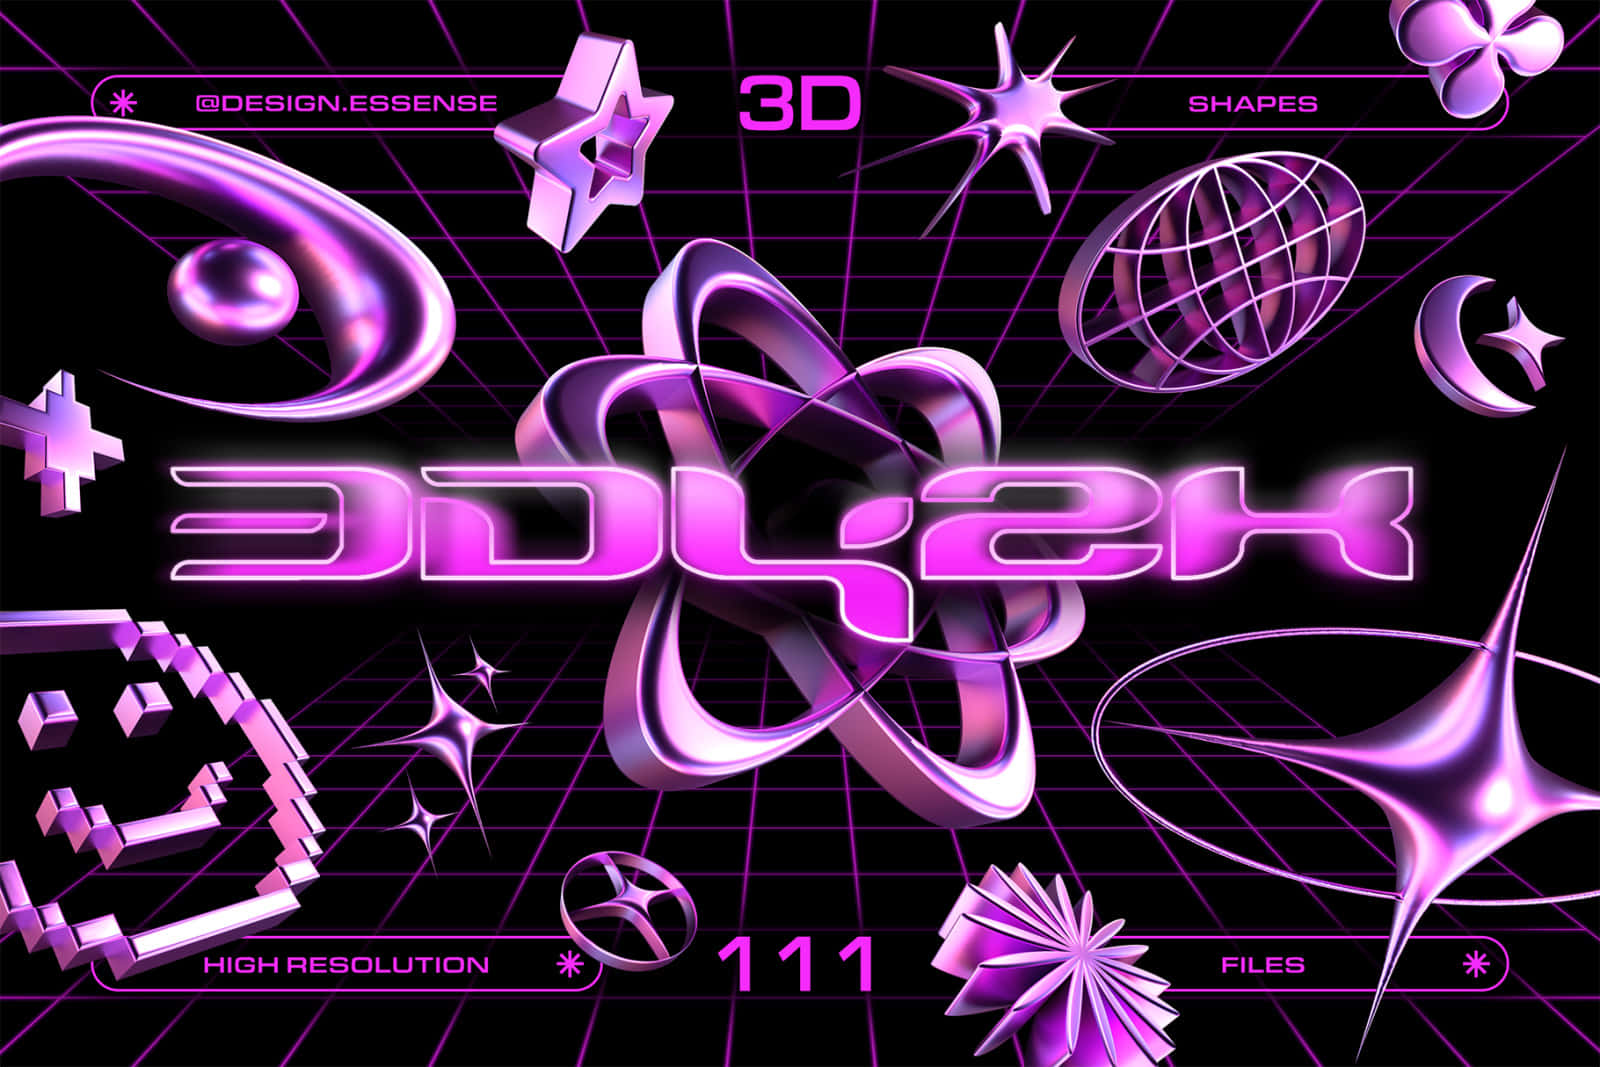 Y2 K3 D Graphic Design Purple Theme Wallpaper